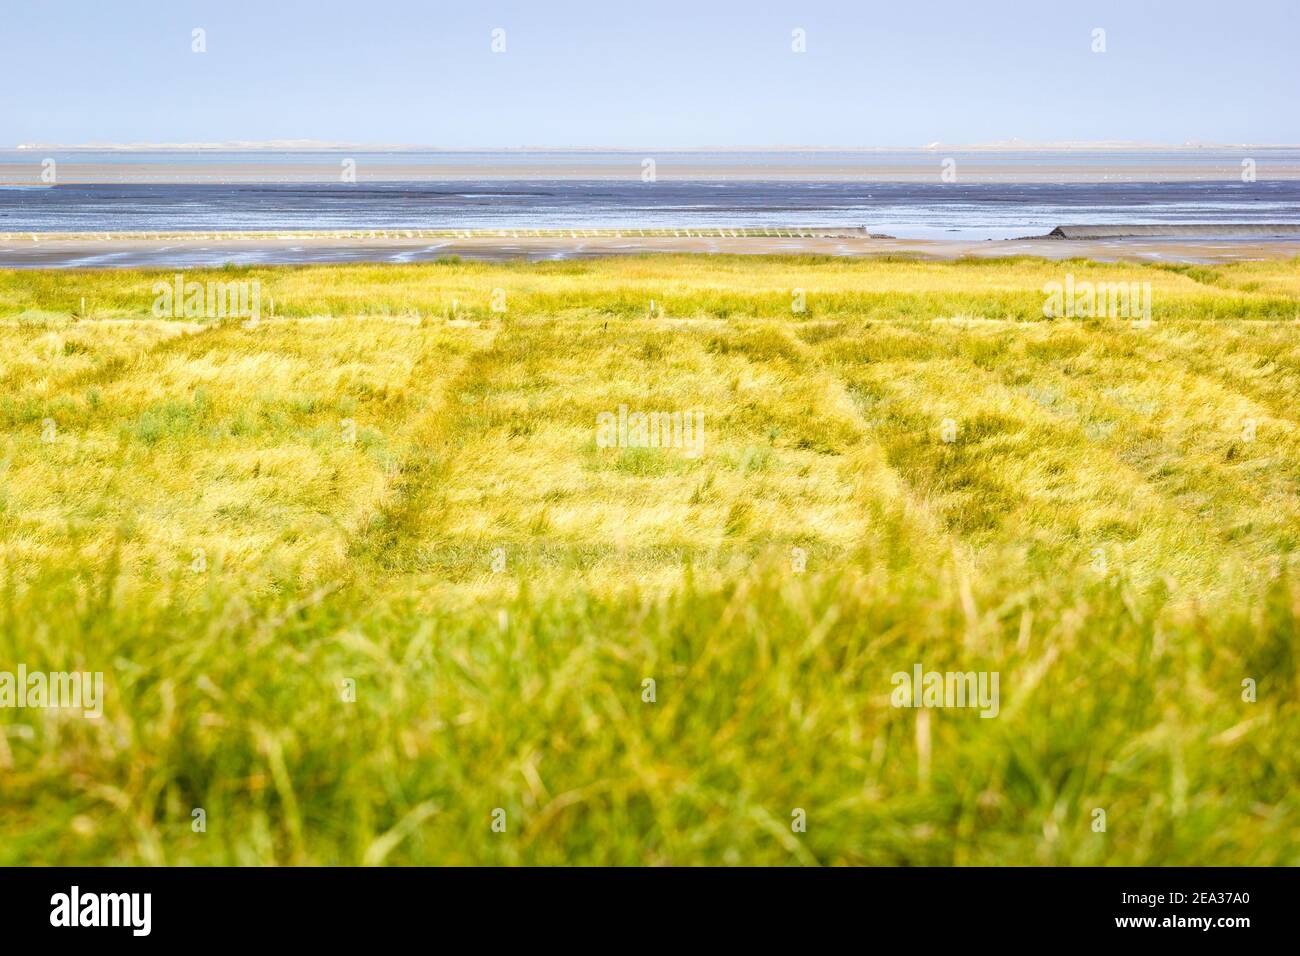 Das wattenmeer bei Ebbe. Der schlammige Boden des Gezeitenflaches ist weit sichtbar hinter einer "Lahnung", einem Betonküstenschutz (Wellenbrecher oder Groy) Stockfoto